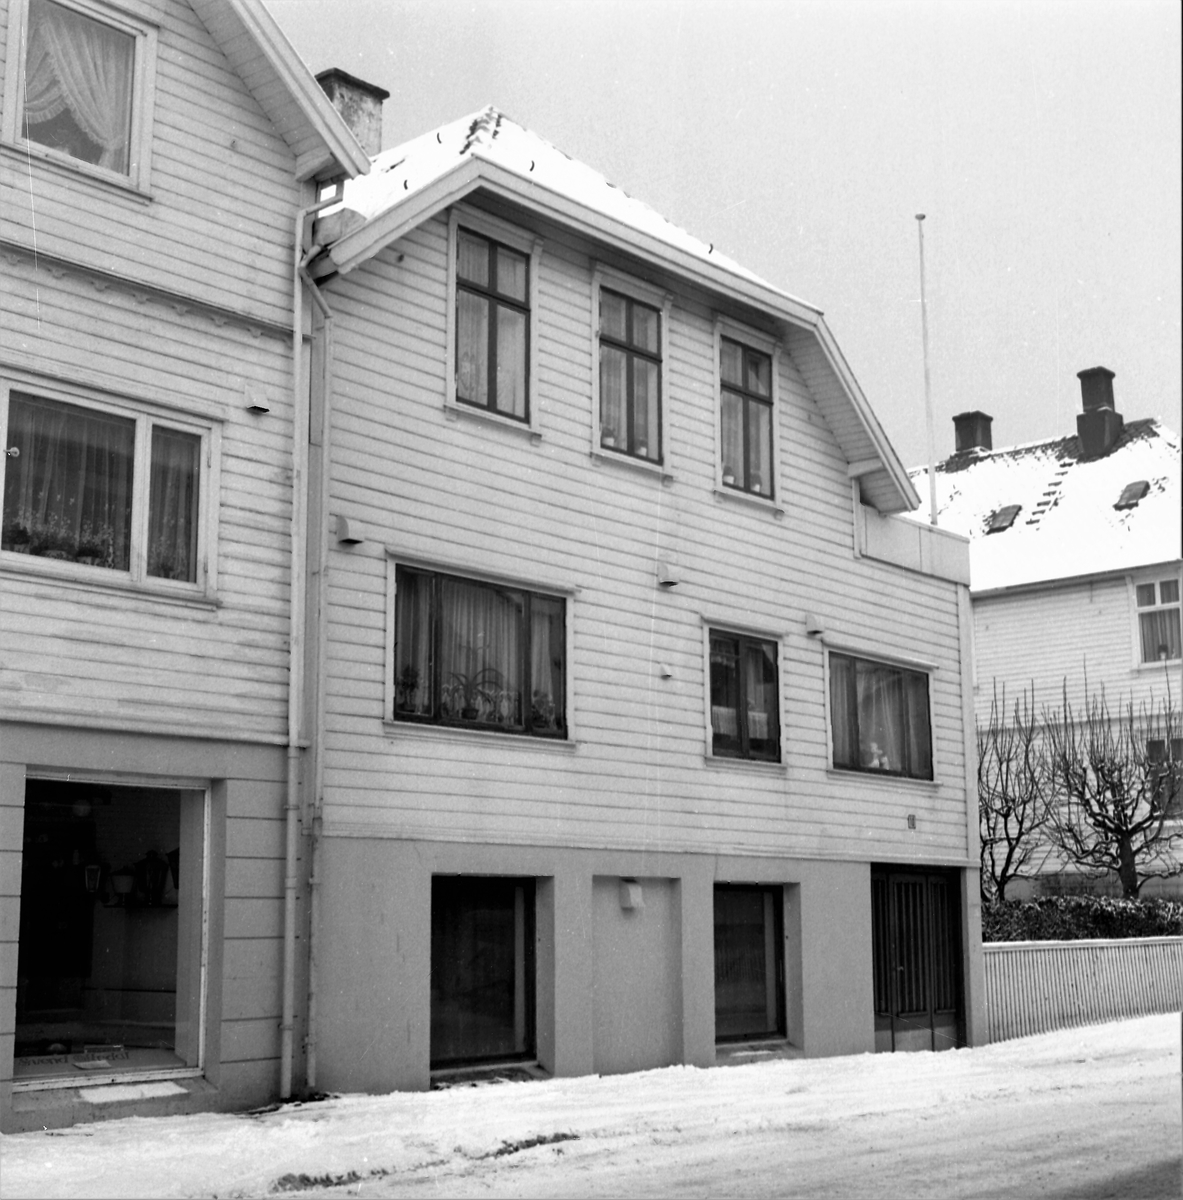 Vinterbilde. Bensinstasjon. Byhus i krysset Tuhauggt./Øvregt. Bestilt av Mobil Bensinstasjon i Øvregt.